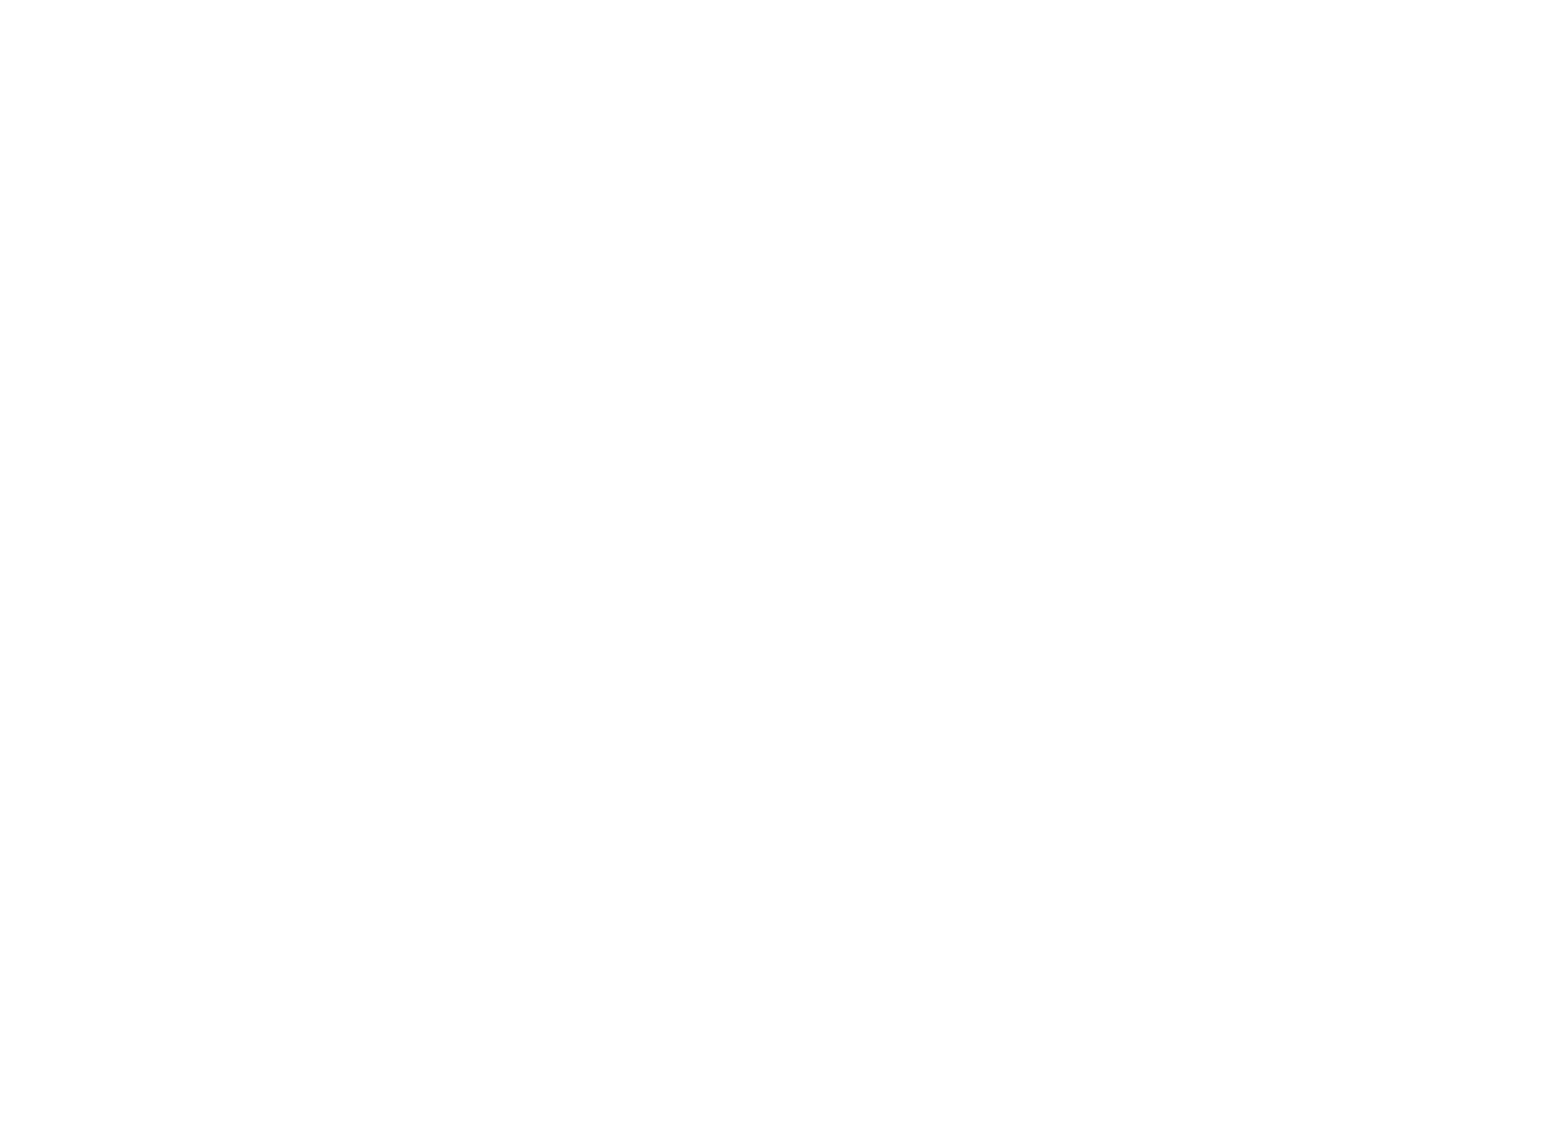 Nestlé logo for dark backgrounds (transparent PNG)